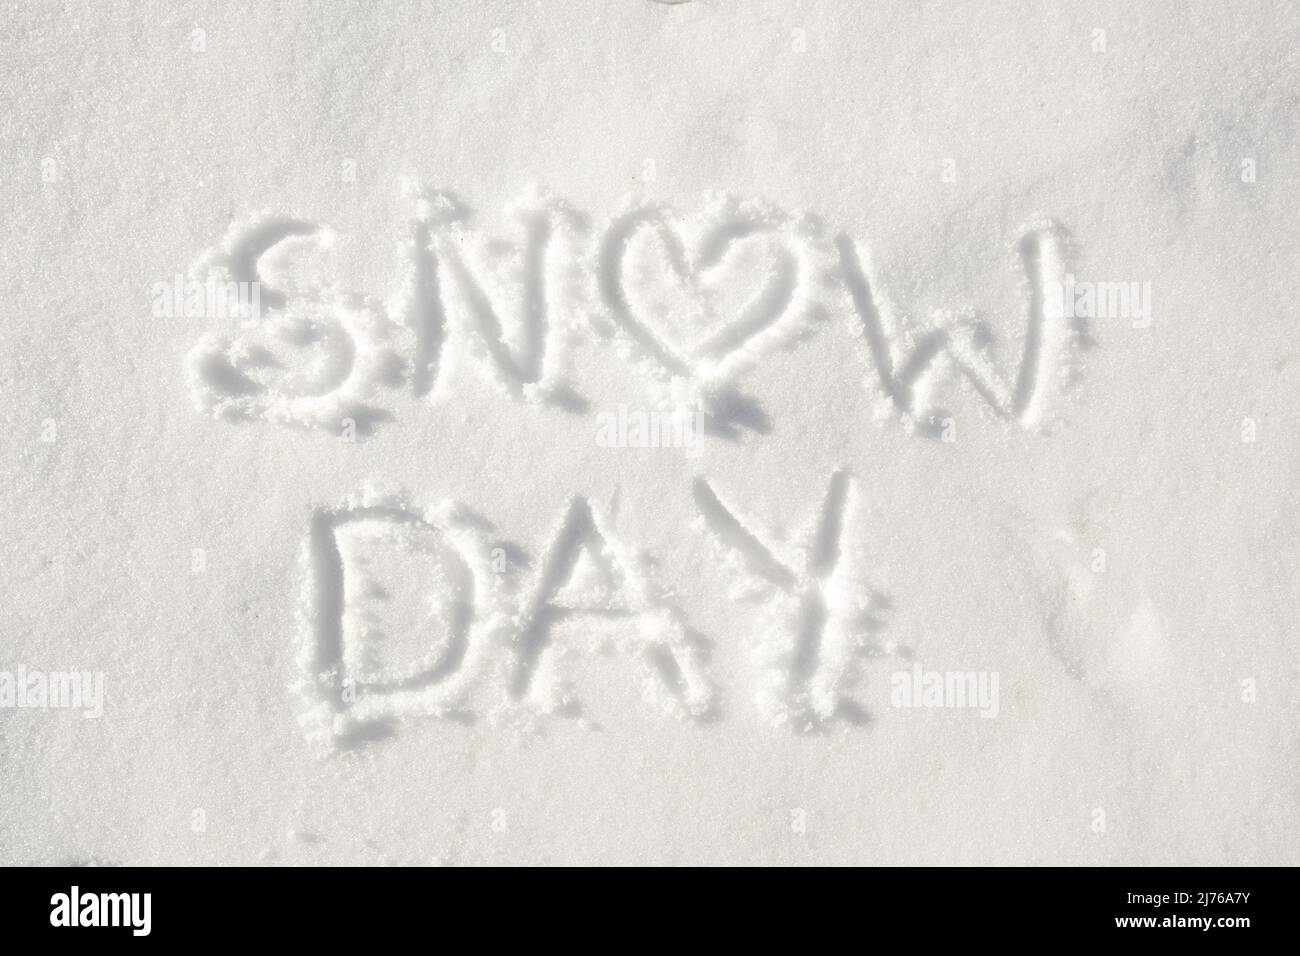 Testo 'giorno di neve' scritto nella neve, con un cuore per la lettera o; concetto di una giornata felice a causa del tempo nevoso Foto Stock